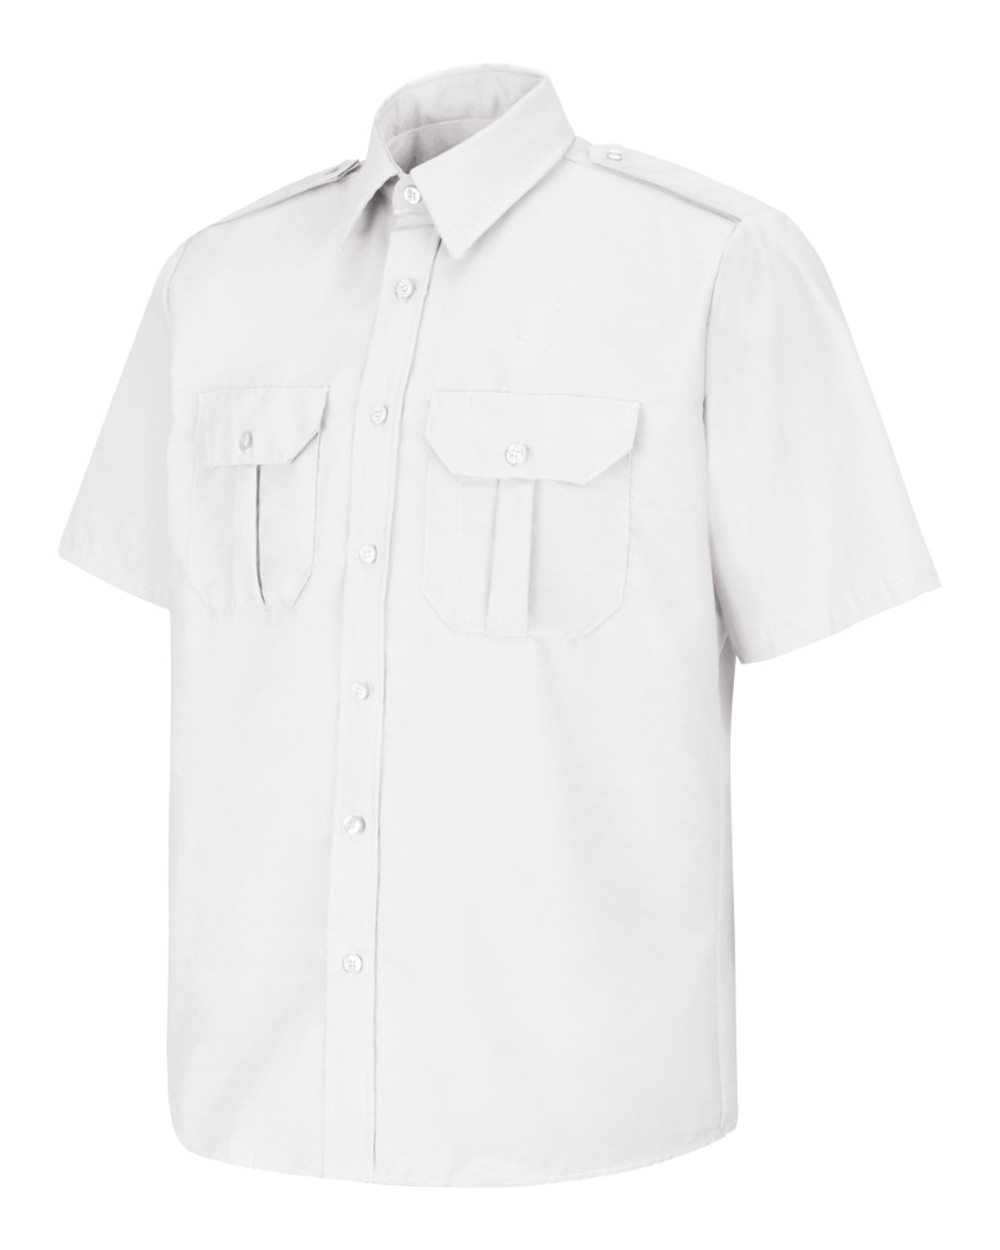 Short Sleeve Security Shirt Long Sizes-